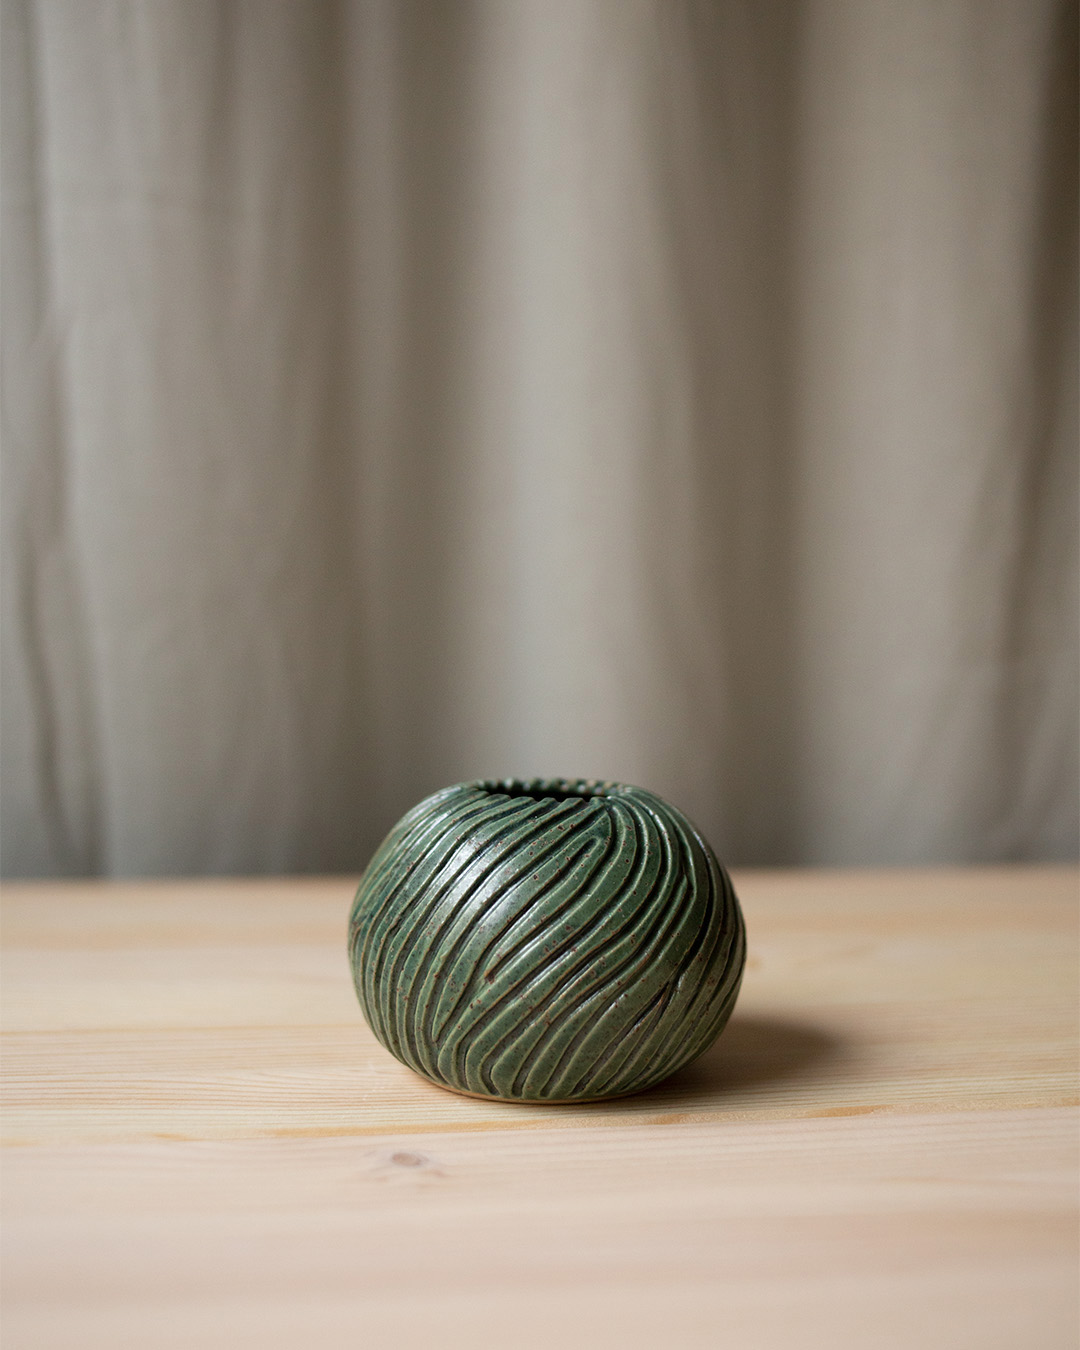 Vase – Havsanemon II by Emelie Zetterberg